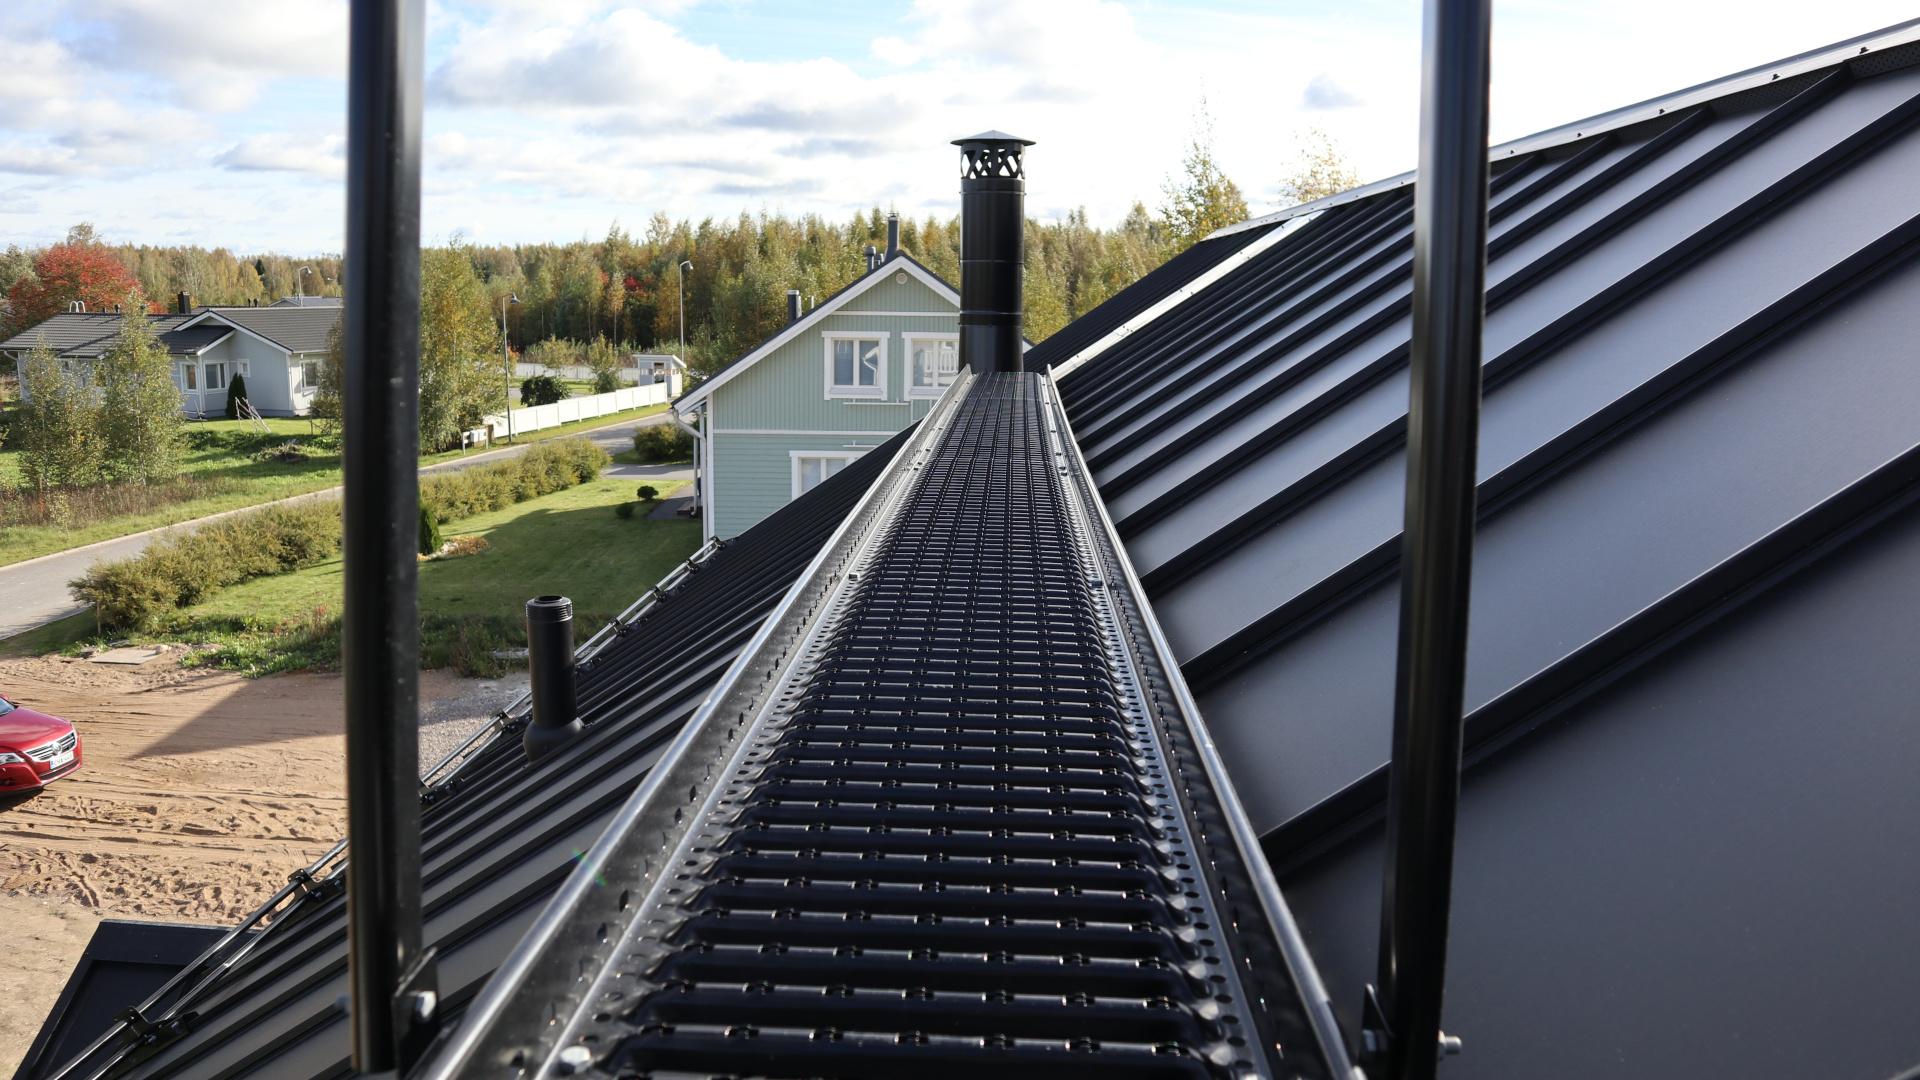 Kattoturvatuotteet on hyvä huomioida kattopeltejä tilattaessa.